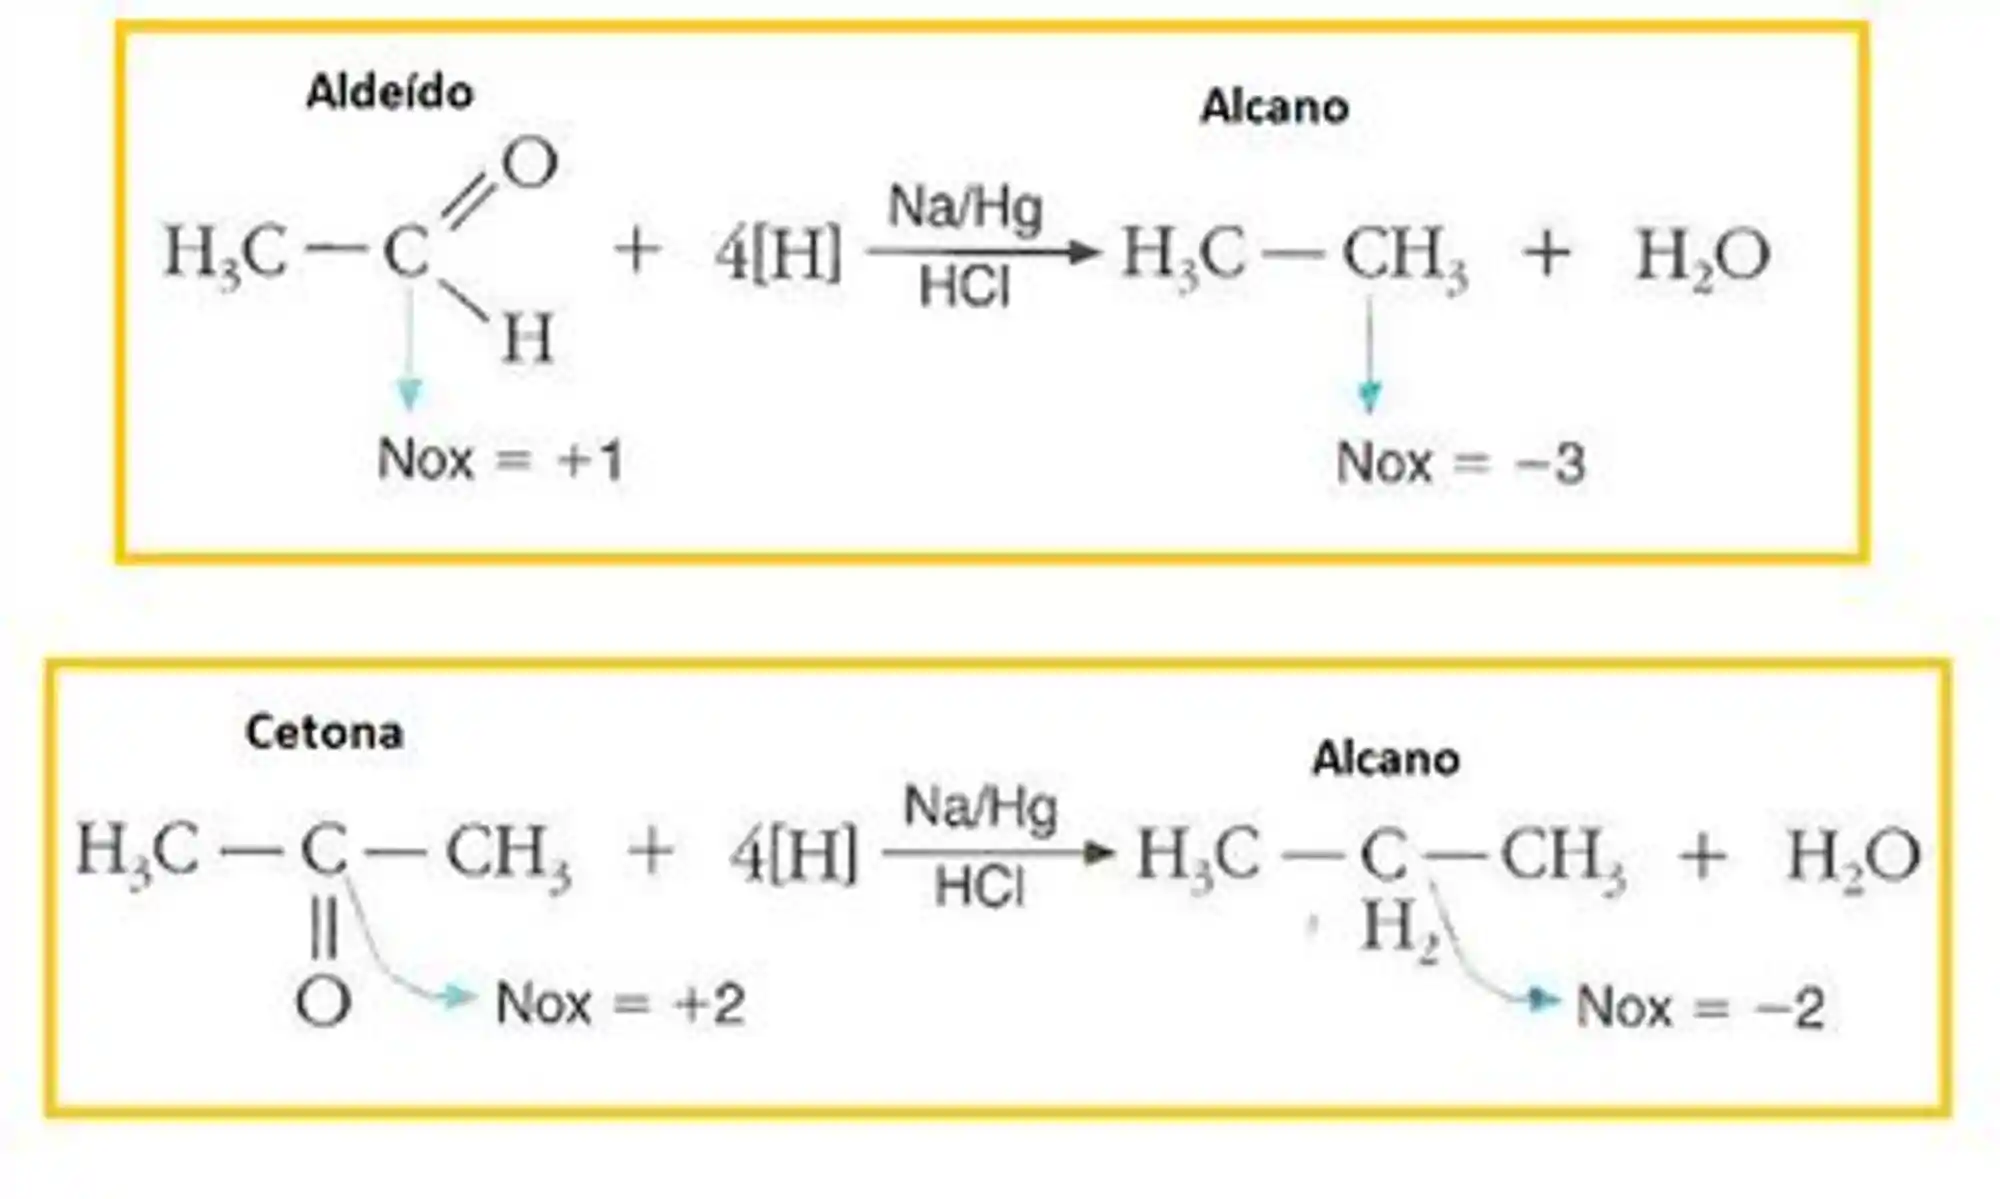 Reações de redução para aldeídos e cetonas na presença de ácido